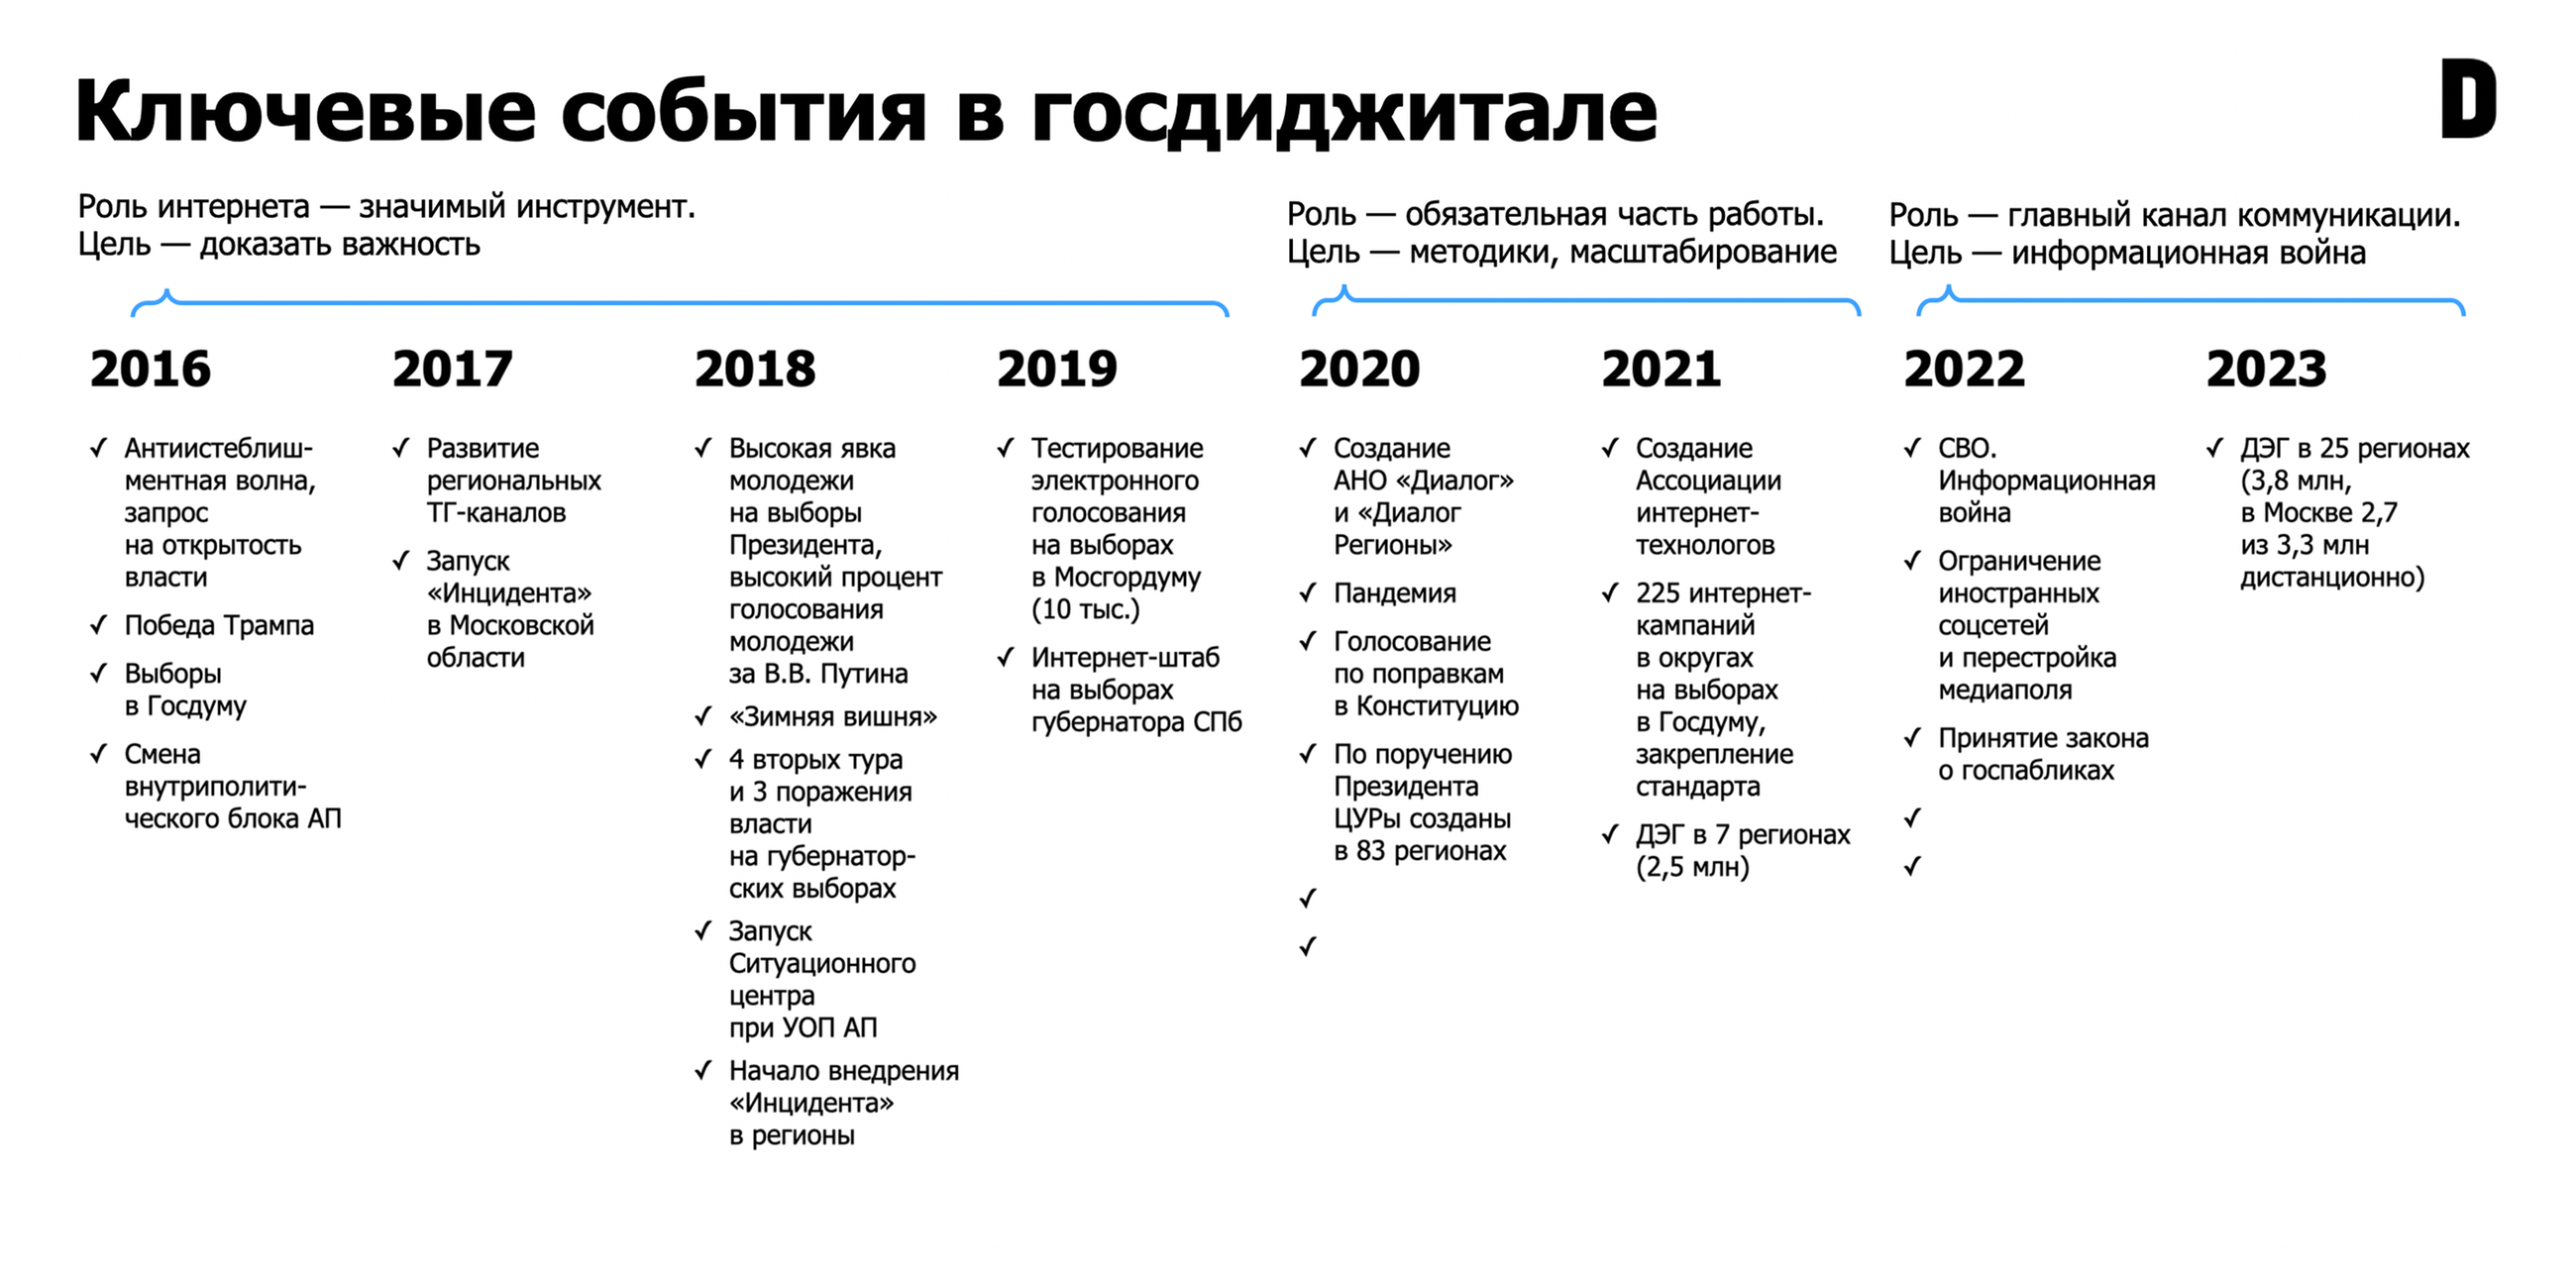 "Gosdigital" heißt ein Projekt, mit dem russische Regierung die "Internetkommunikation des öffentlichen Sektors in Russland“ fördern will.